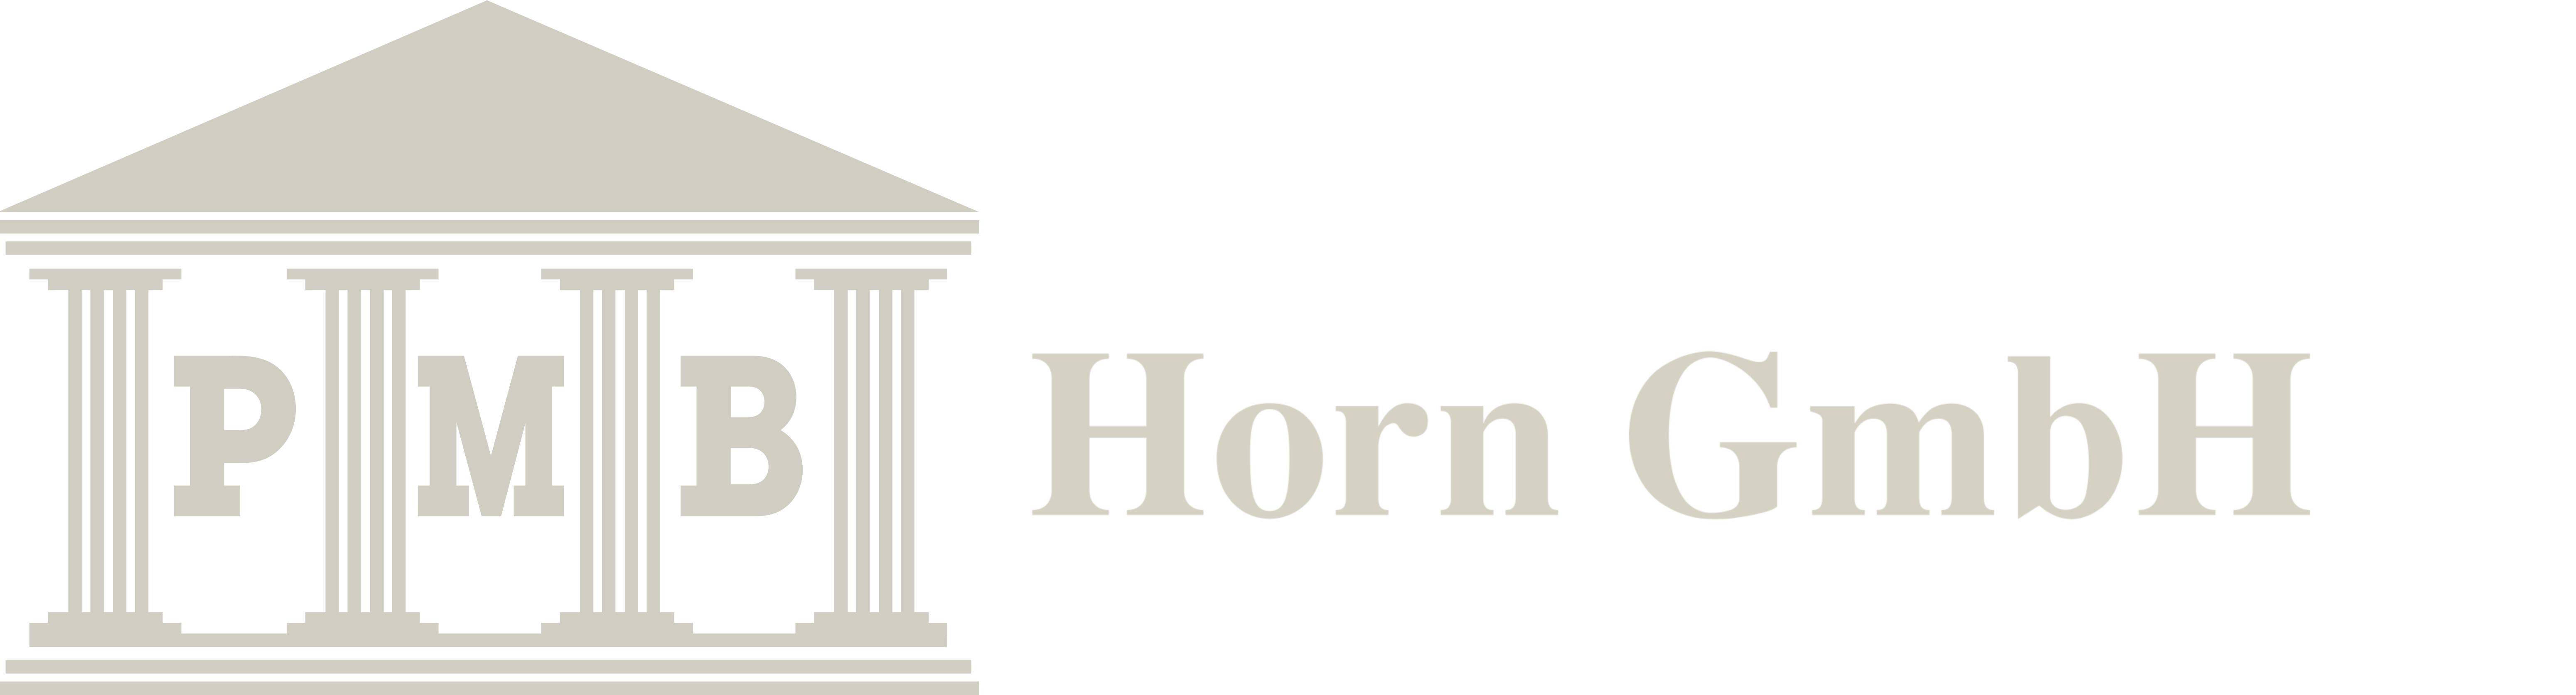 PMB Horn GmbH